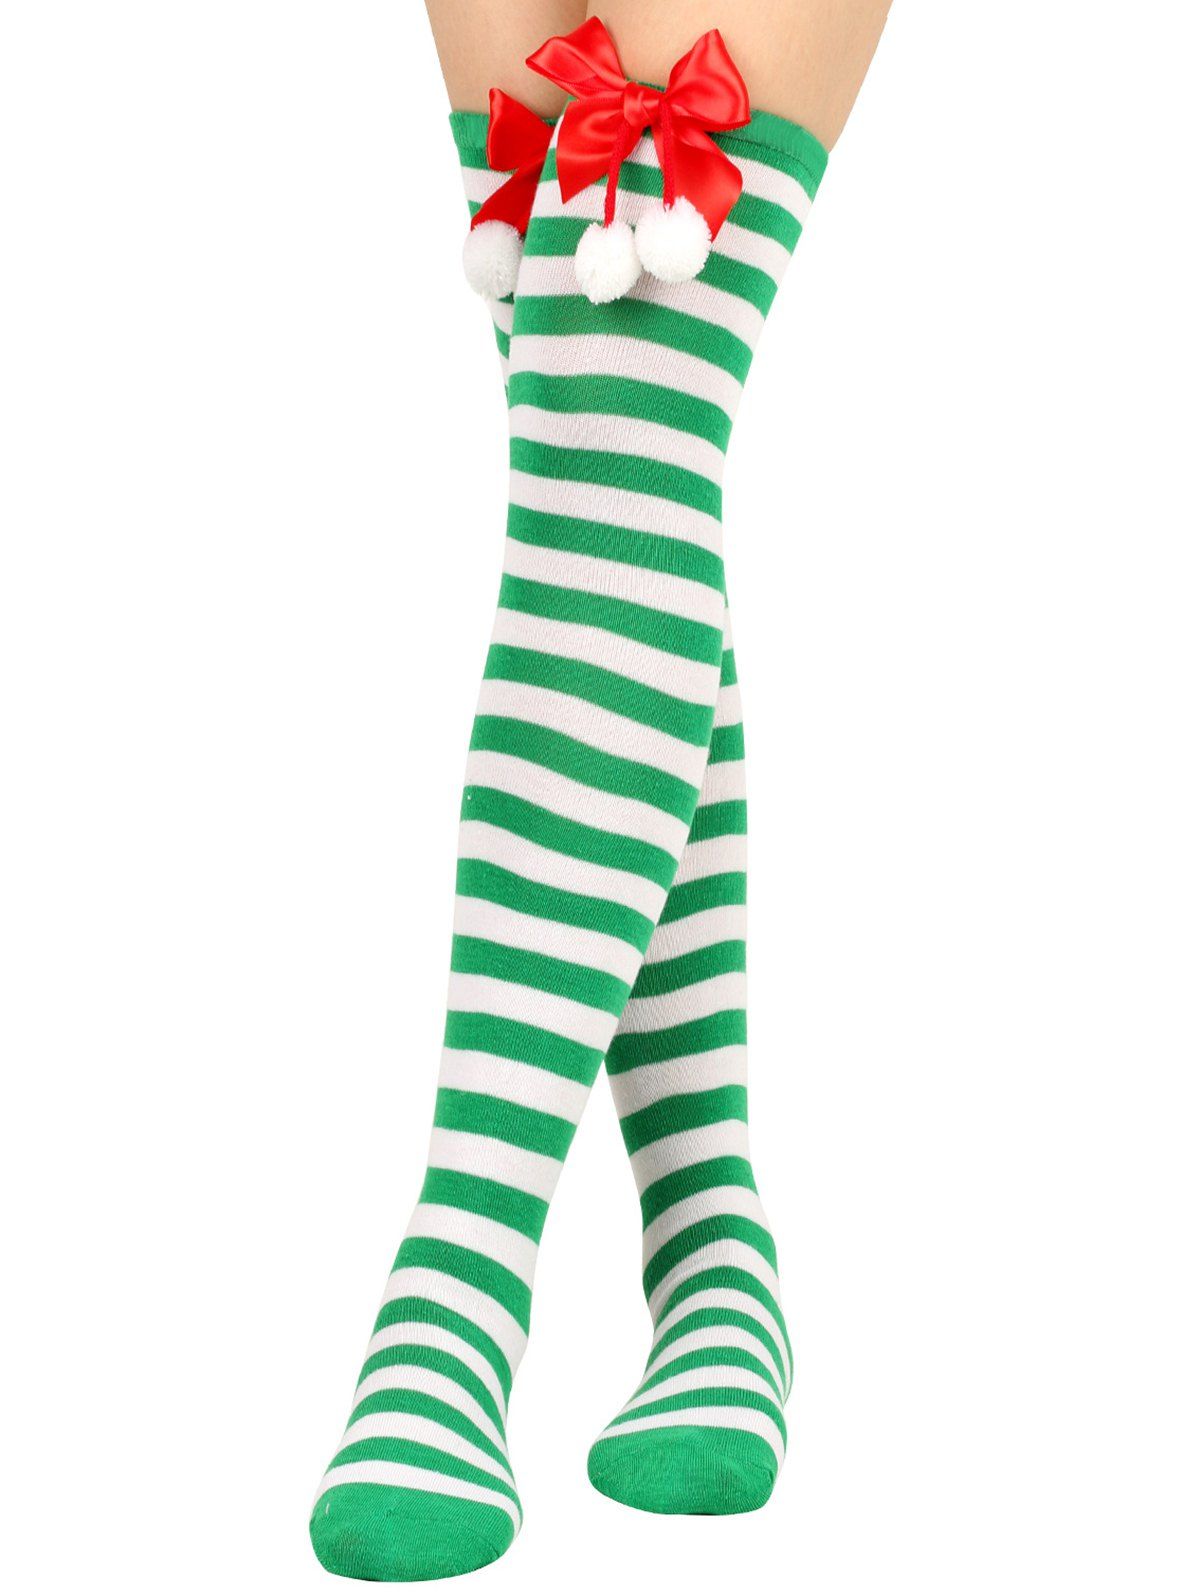 Chaussettes de Noël Hautes Rayées Nouées Imprimées - Vert Trèfle 1 PAIR